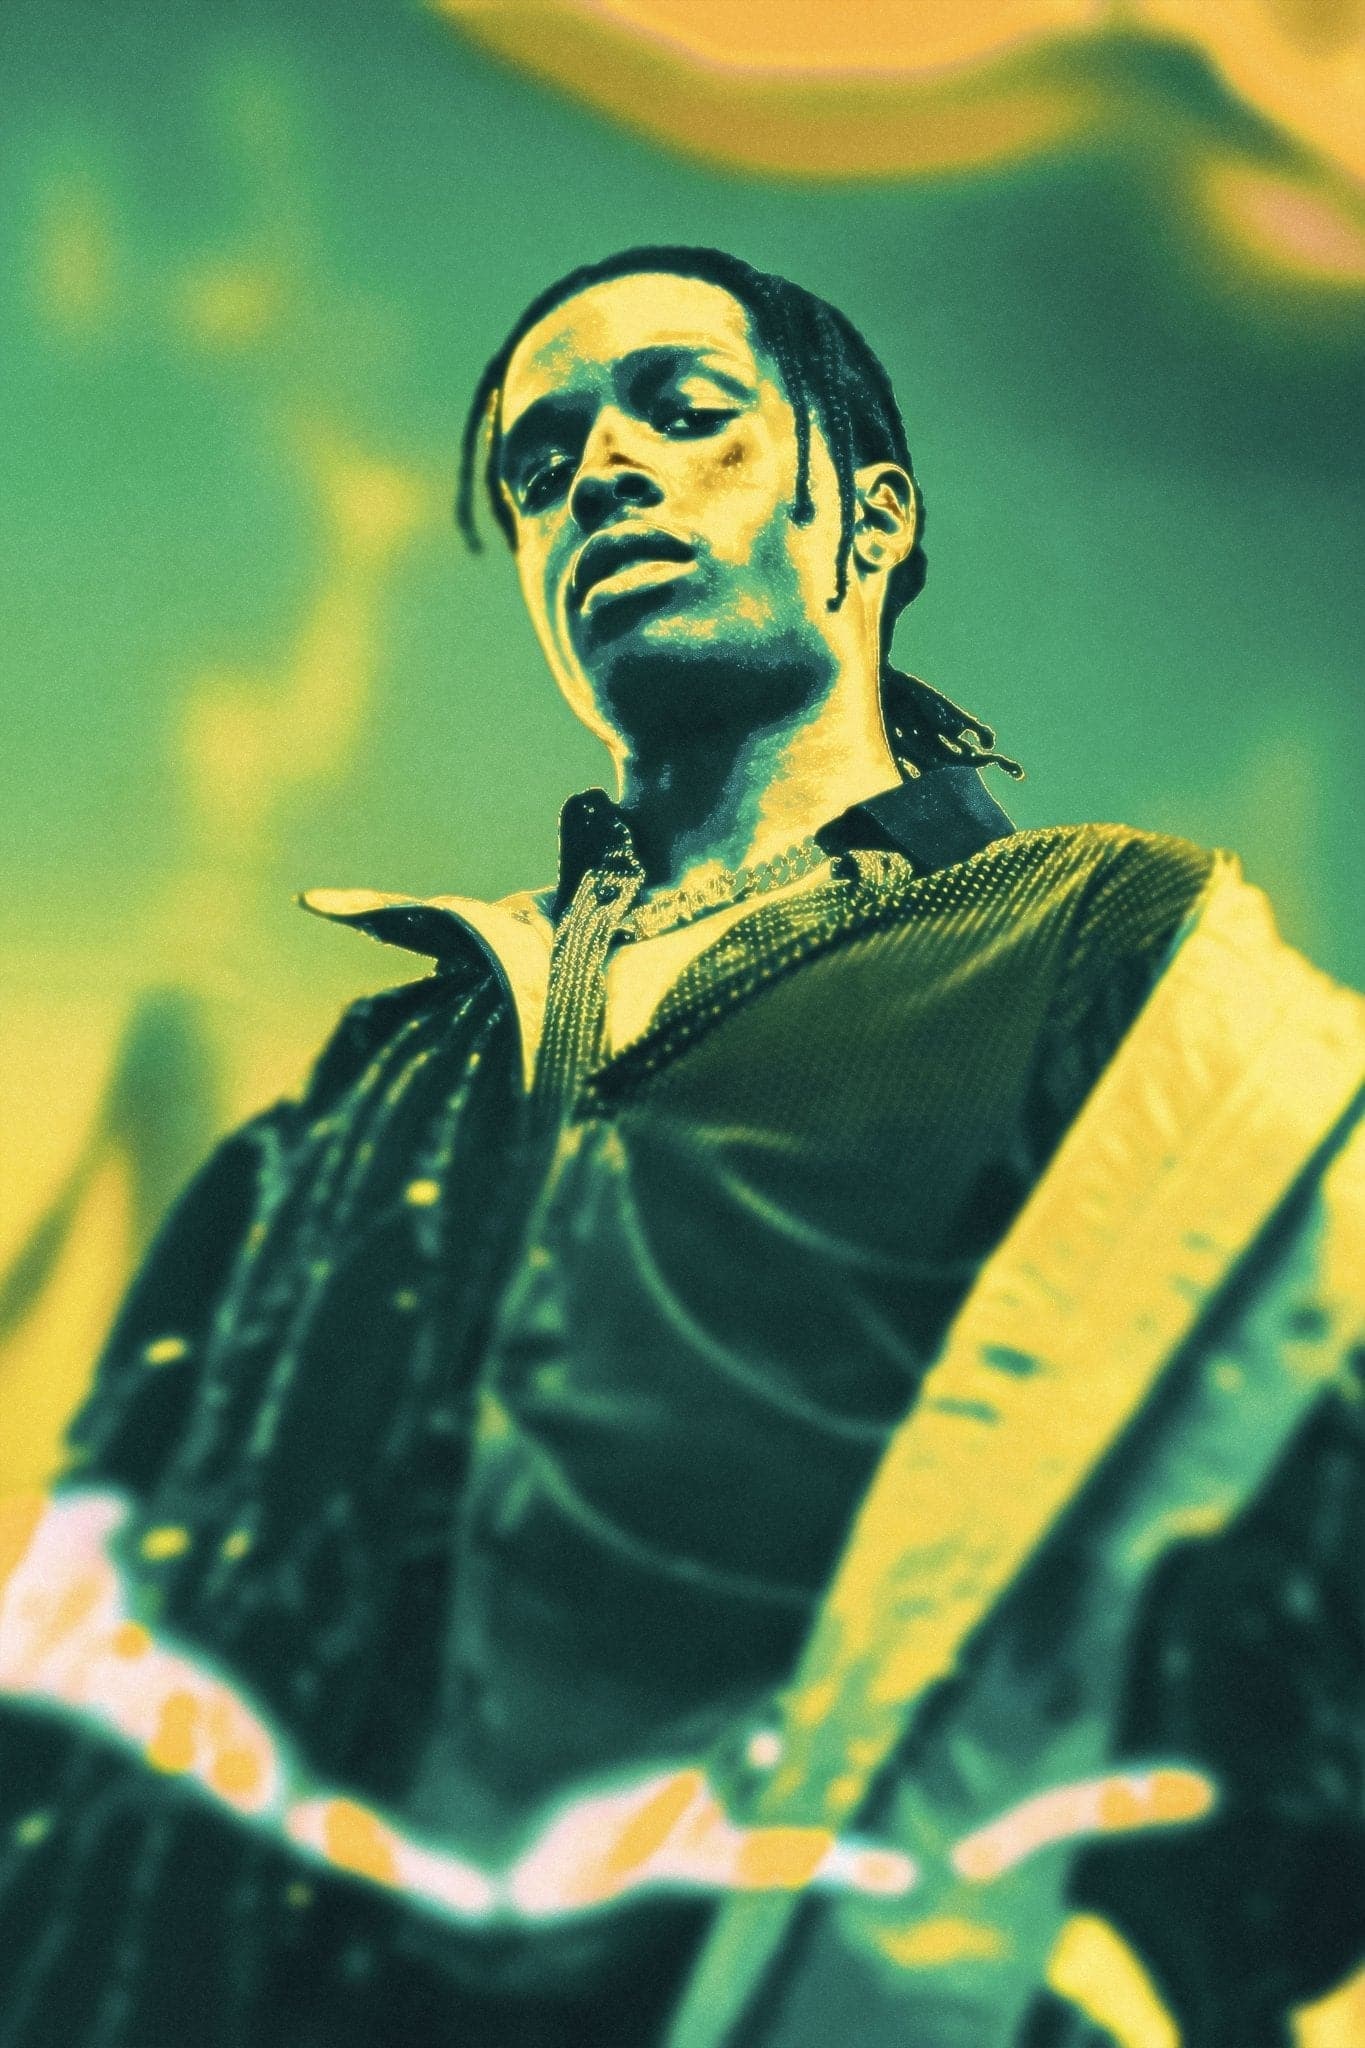 ASAP Rocky 'Green Haze' Poster